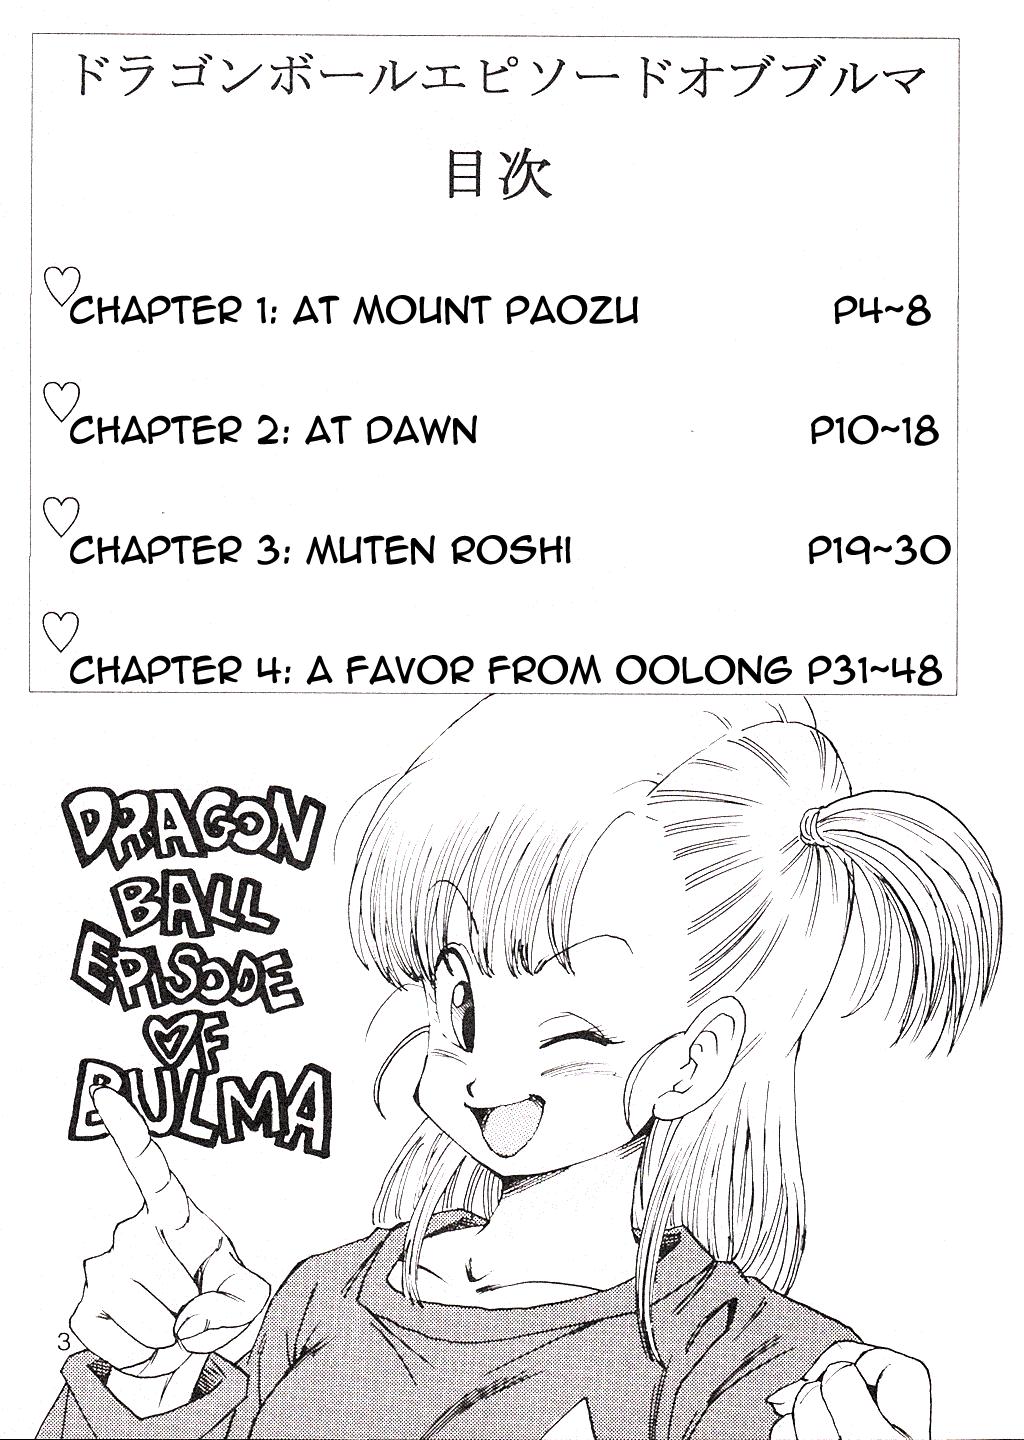 Amateur Asian Dragon Ball EB Episode of Bulma - Dragon ball Parody - Page 4